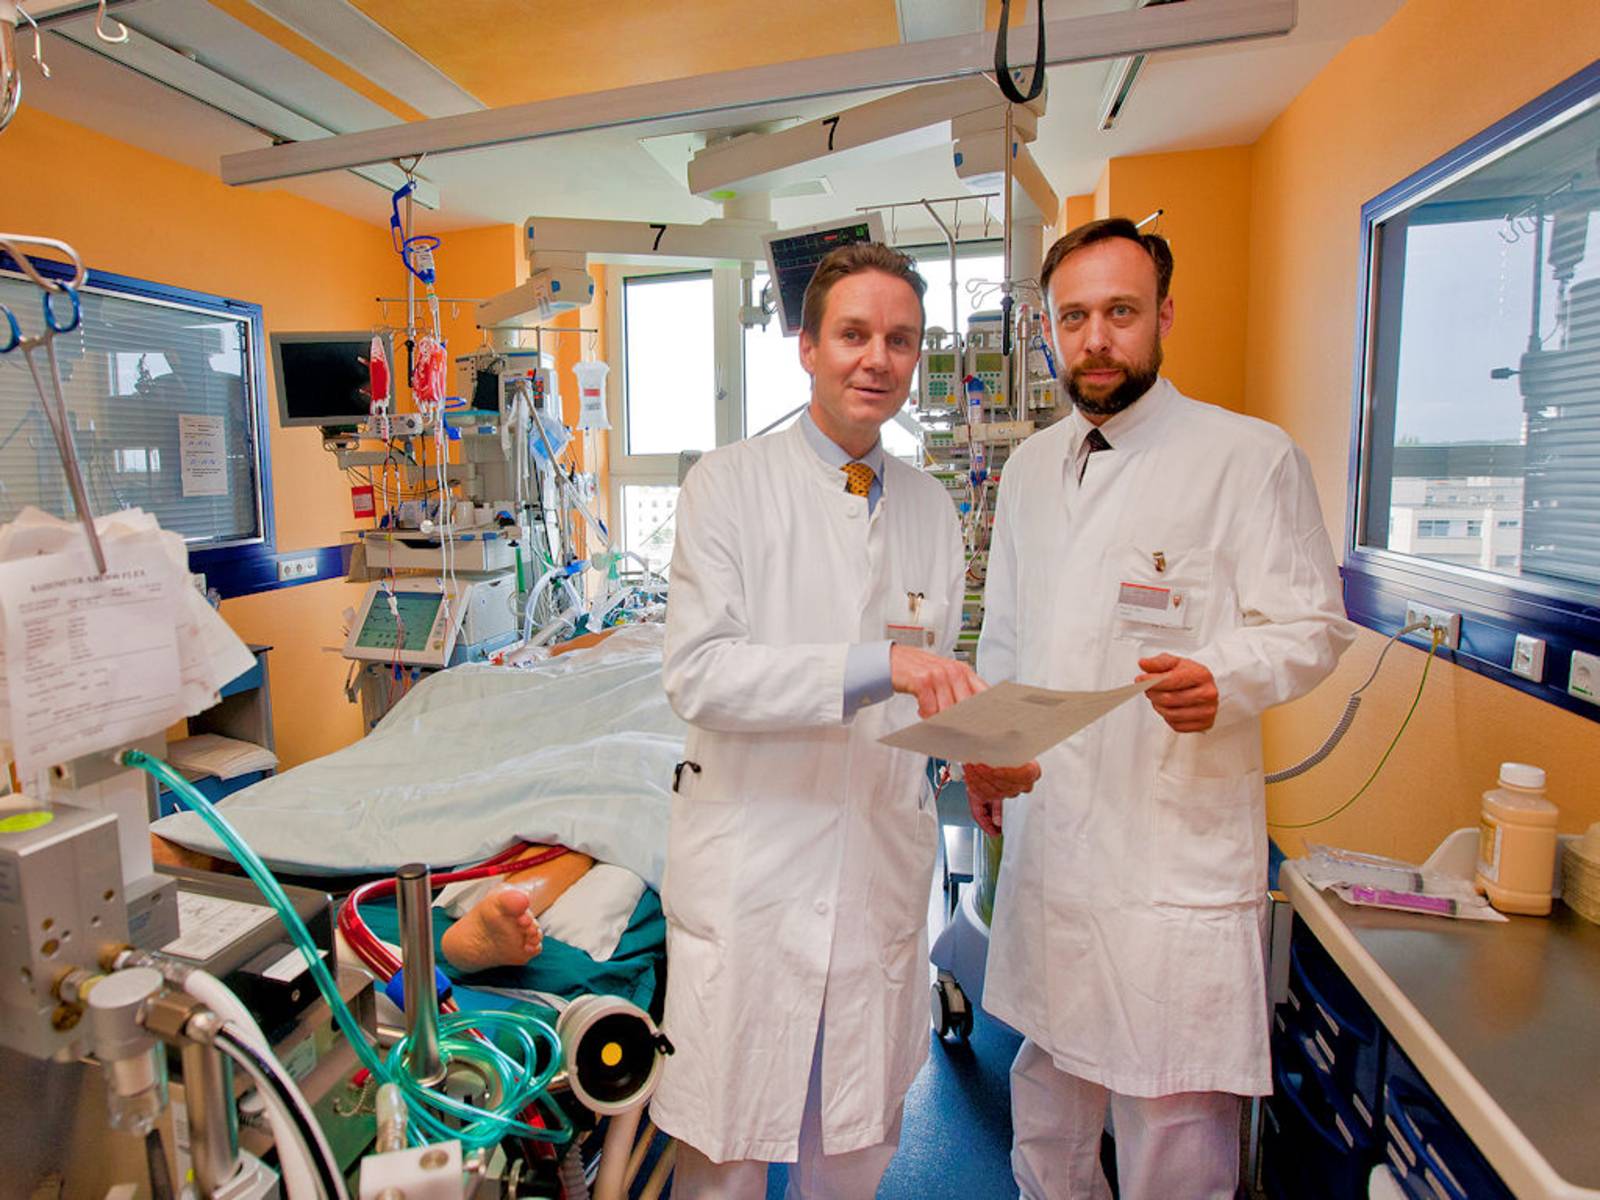 Zwei Männer in weißen Kitteln in einem Raum mit medizinischen Apparaten.